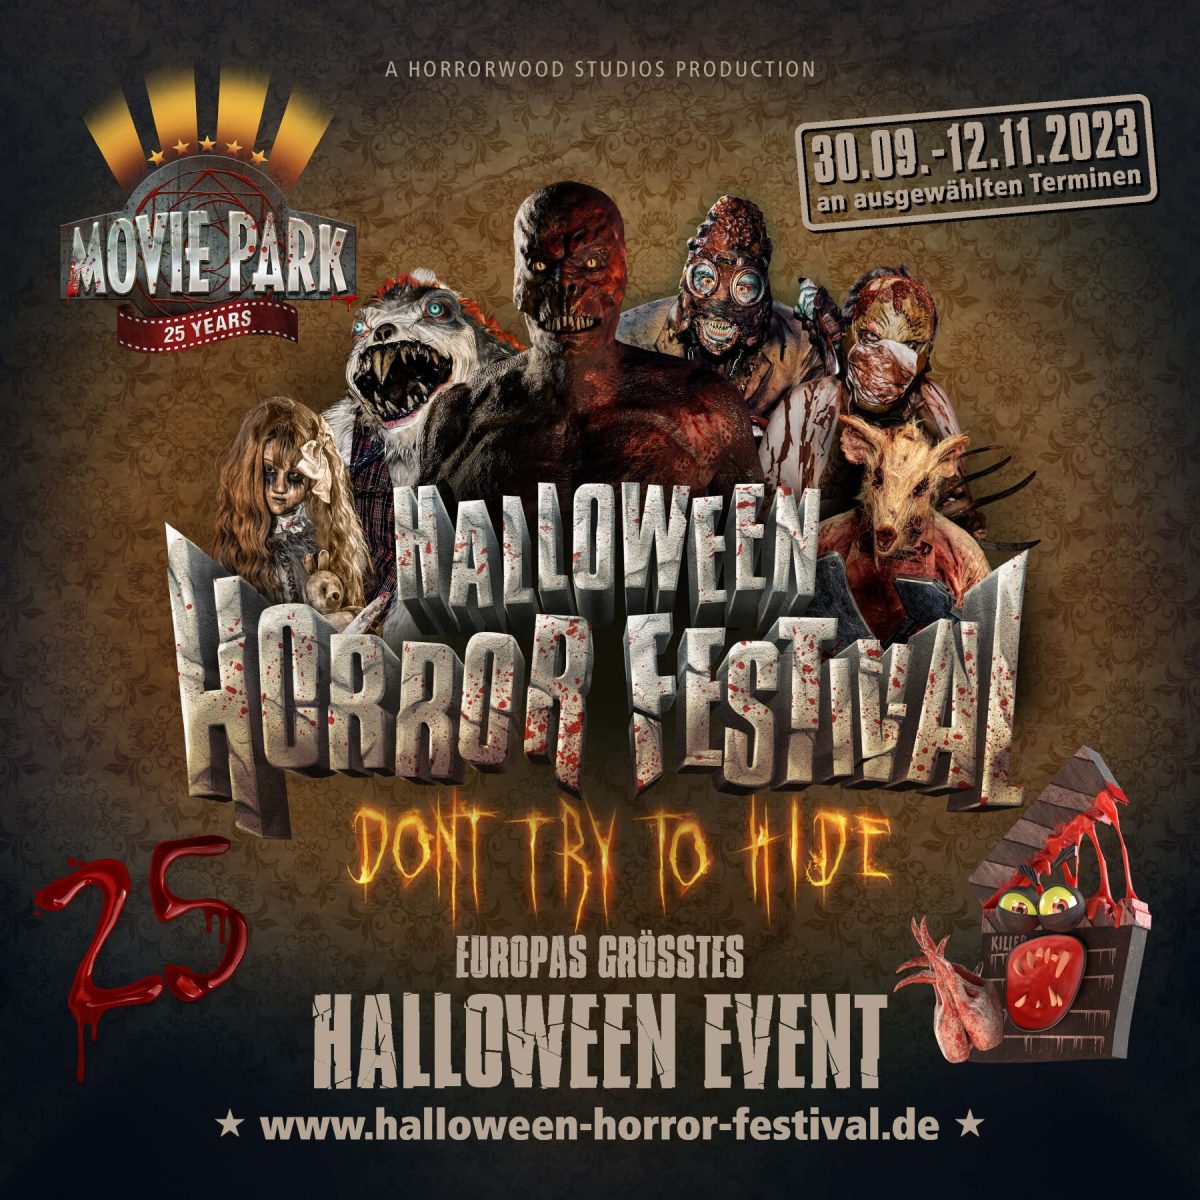 Movie Park veranstaltet Halloween-Horror-Festival. Eine Besucherin aus Holland musste das schmerzlich am eigenen Leib erfahren.